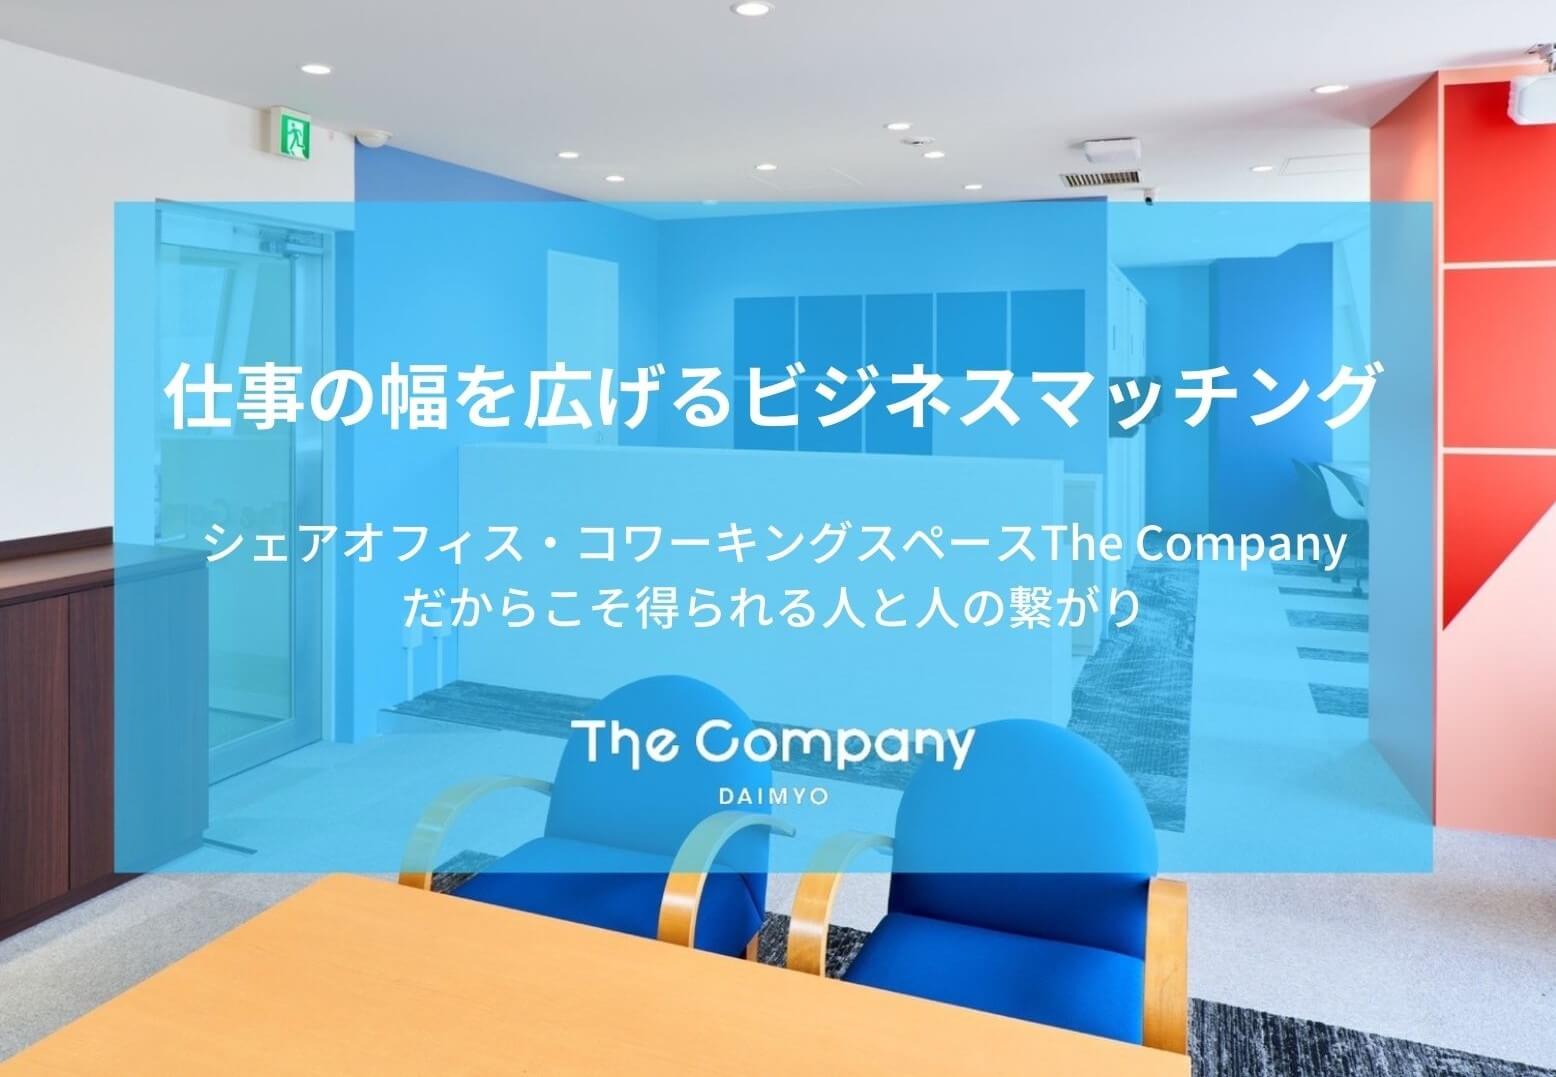 【福岡シェアオフィス】The Company DAIMYO(大名)のビジネスマッチング